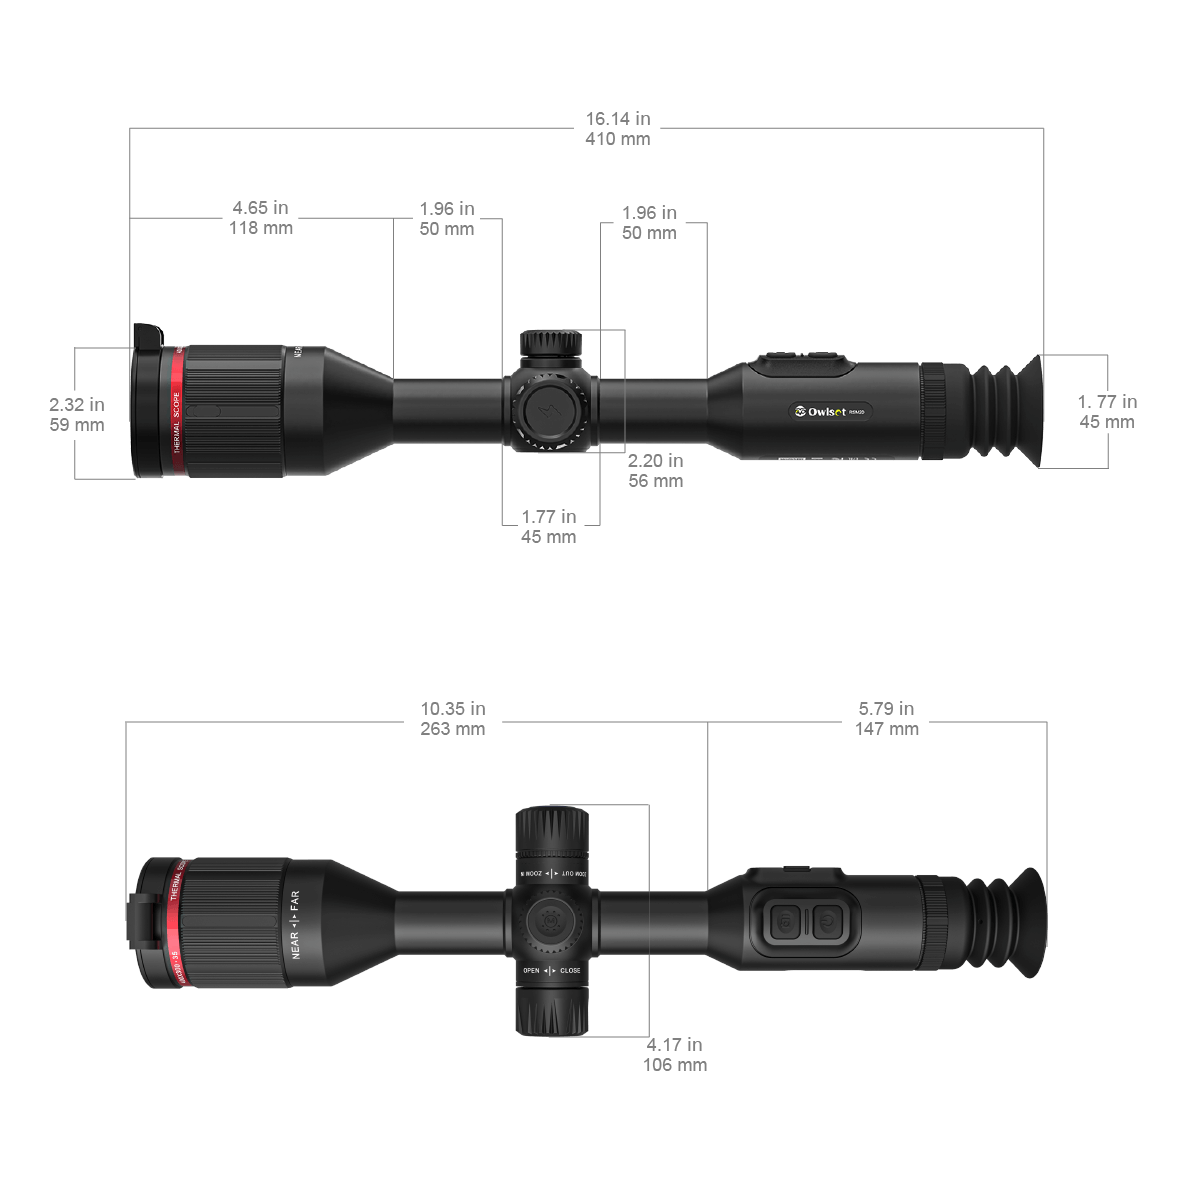 VEOT-RS03 RSM30 Riflescope Dimensions